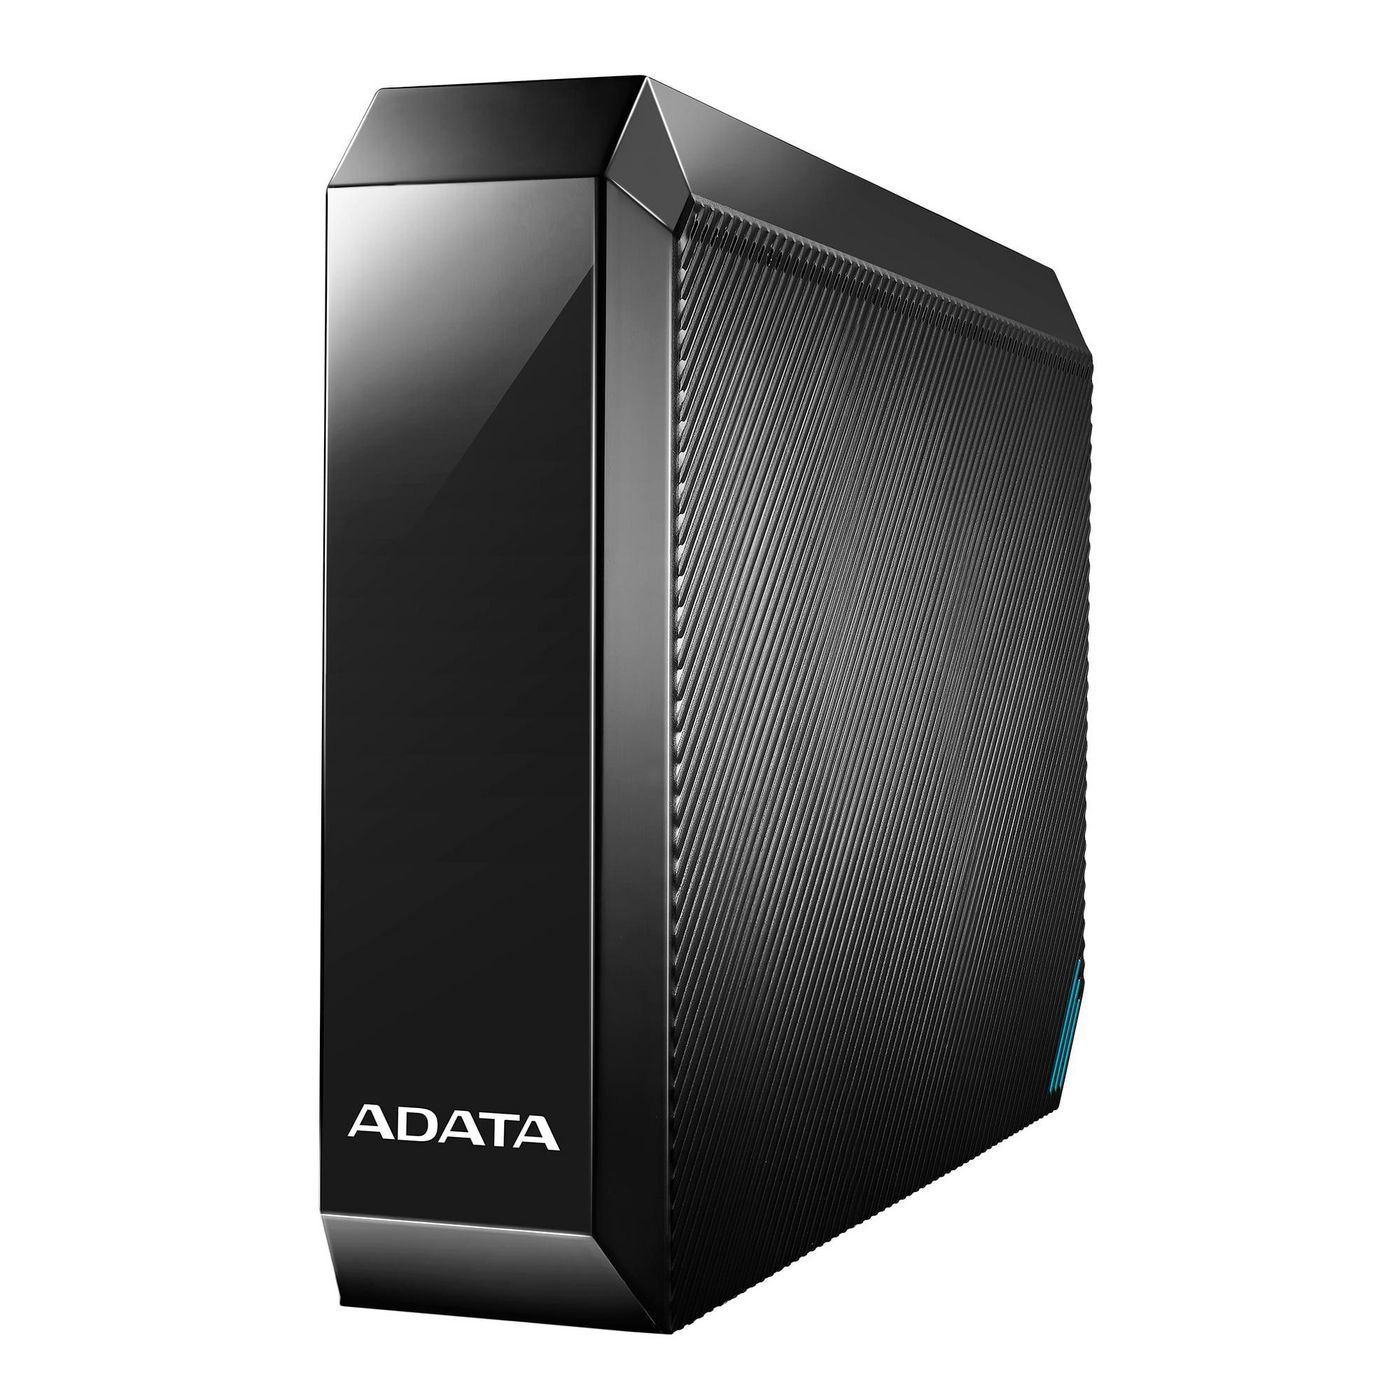 ADATA AHM800-6TU32G1-CUSBK W125977298 HM800 3.5 External HDD 6TB, 